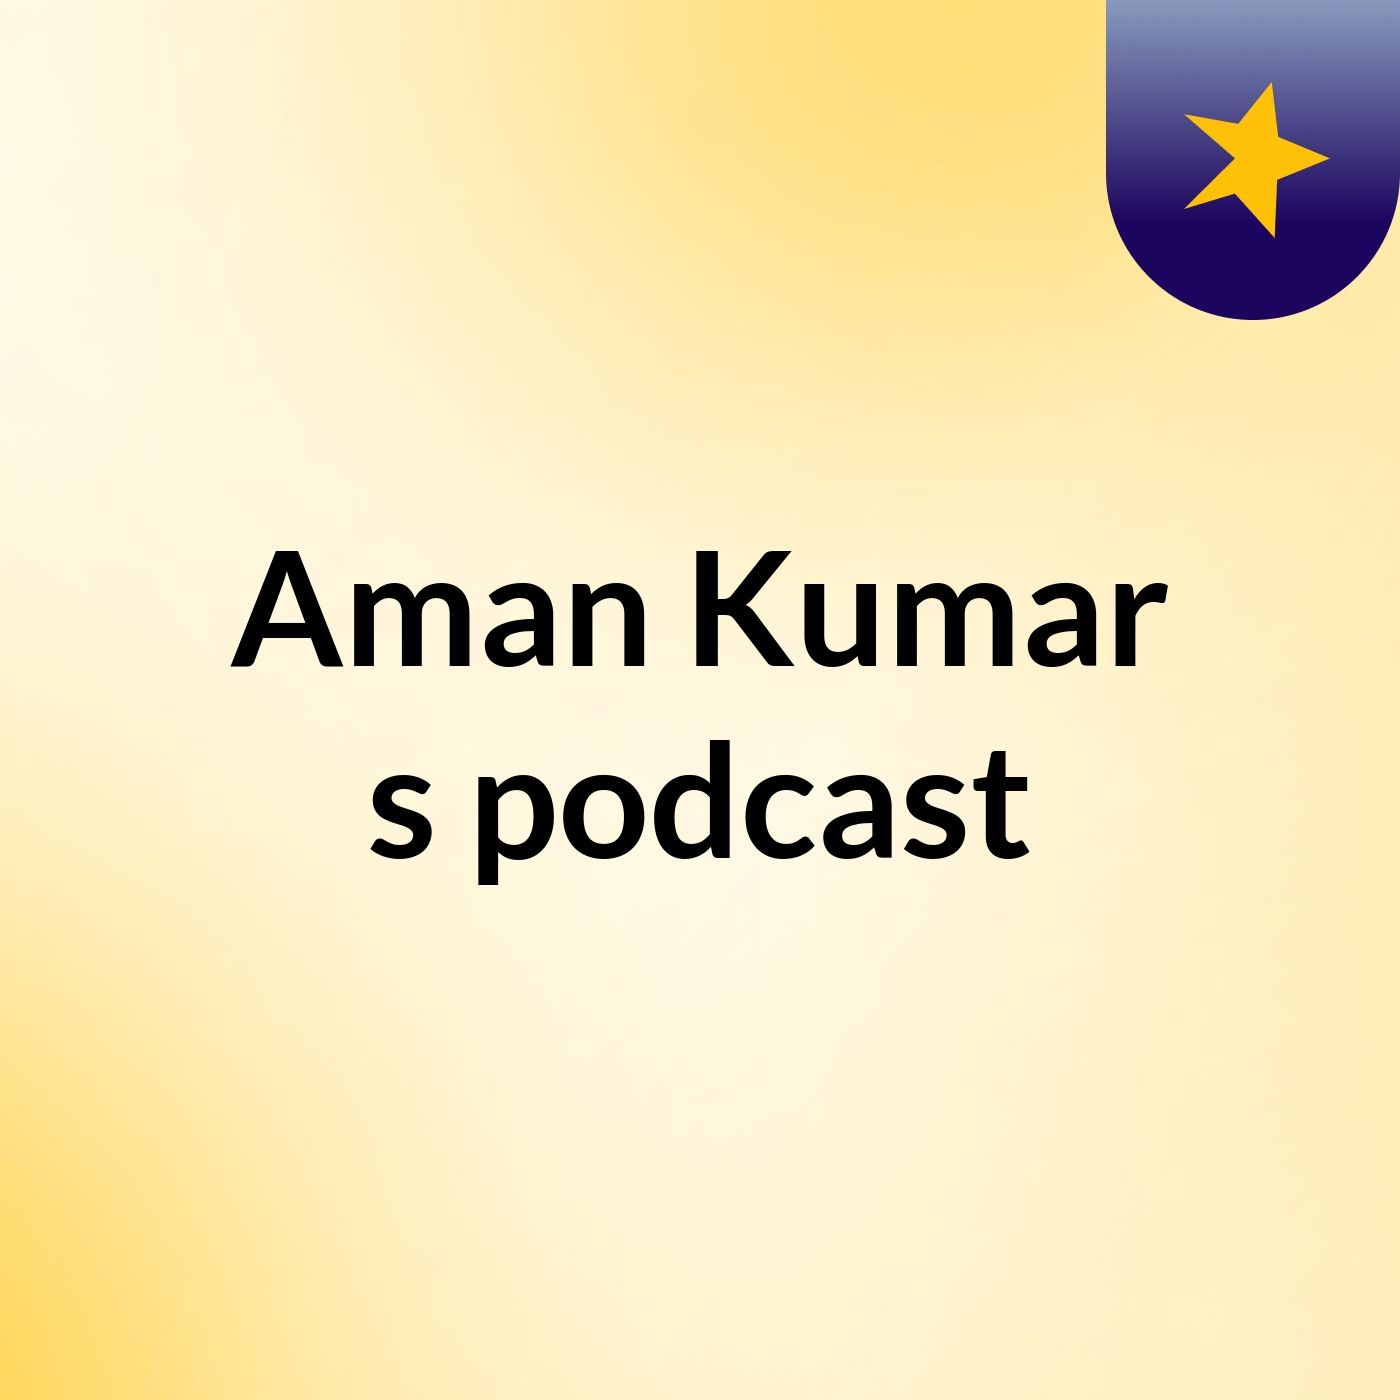 Aman Kumar's podcast